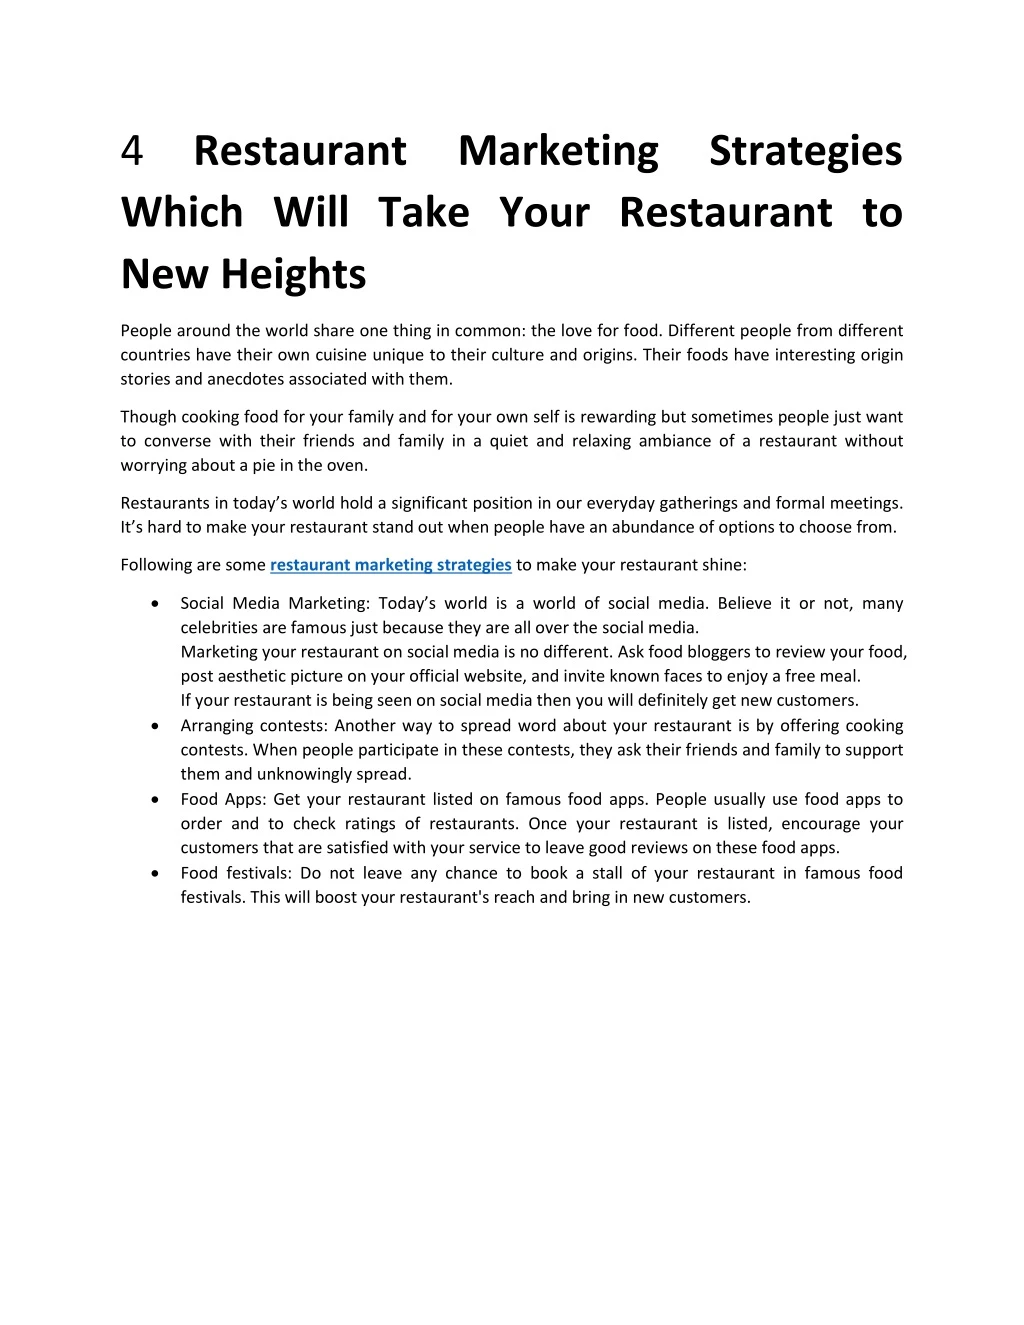 4 restaurant marketing strategies which will take